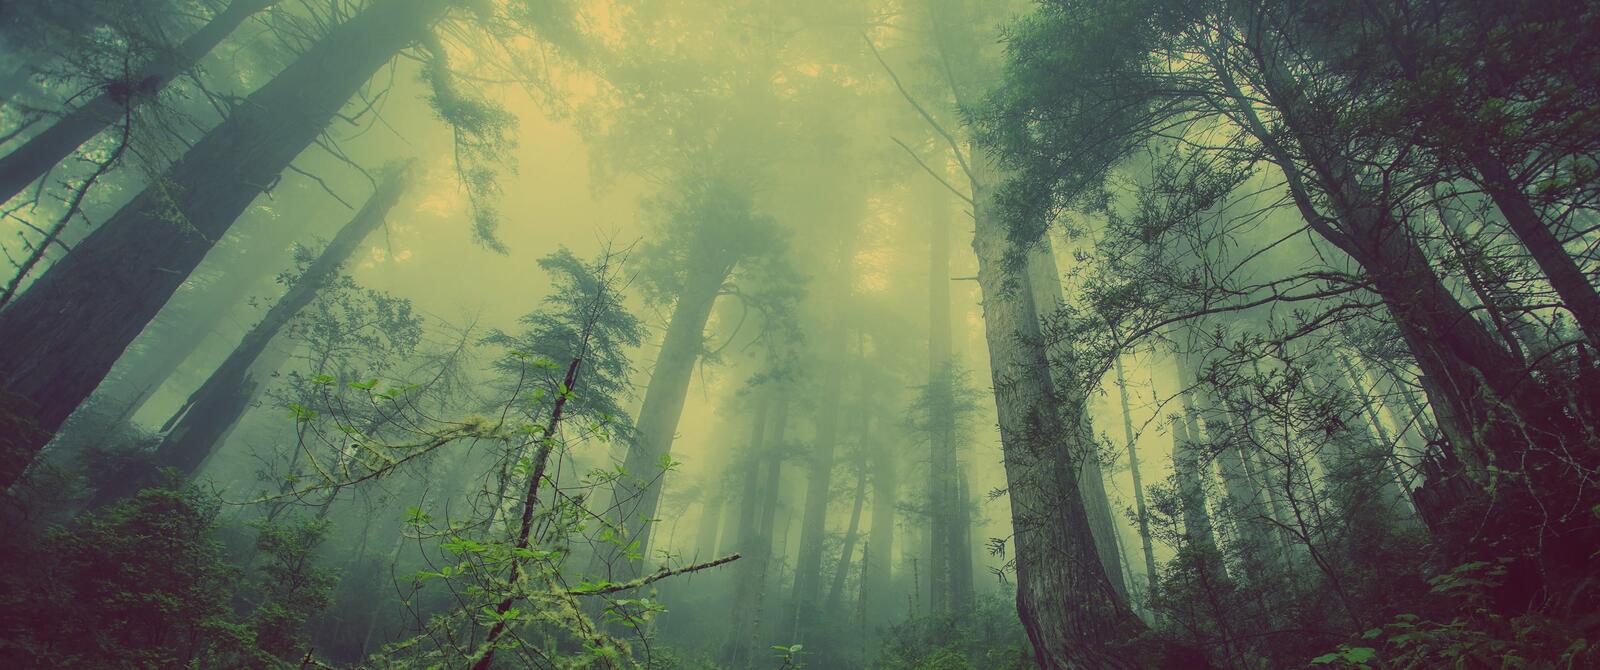 Бесплатное фото Мрачный туманный лес с хвойными деревьями